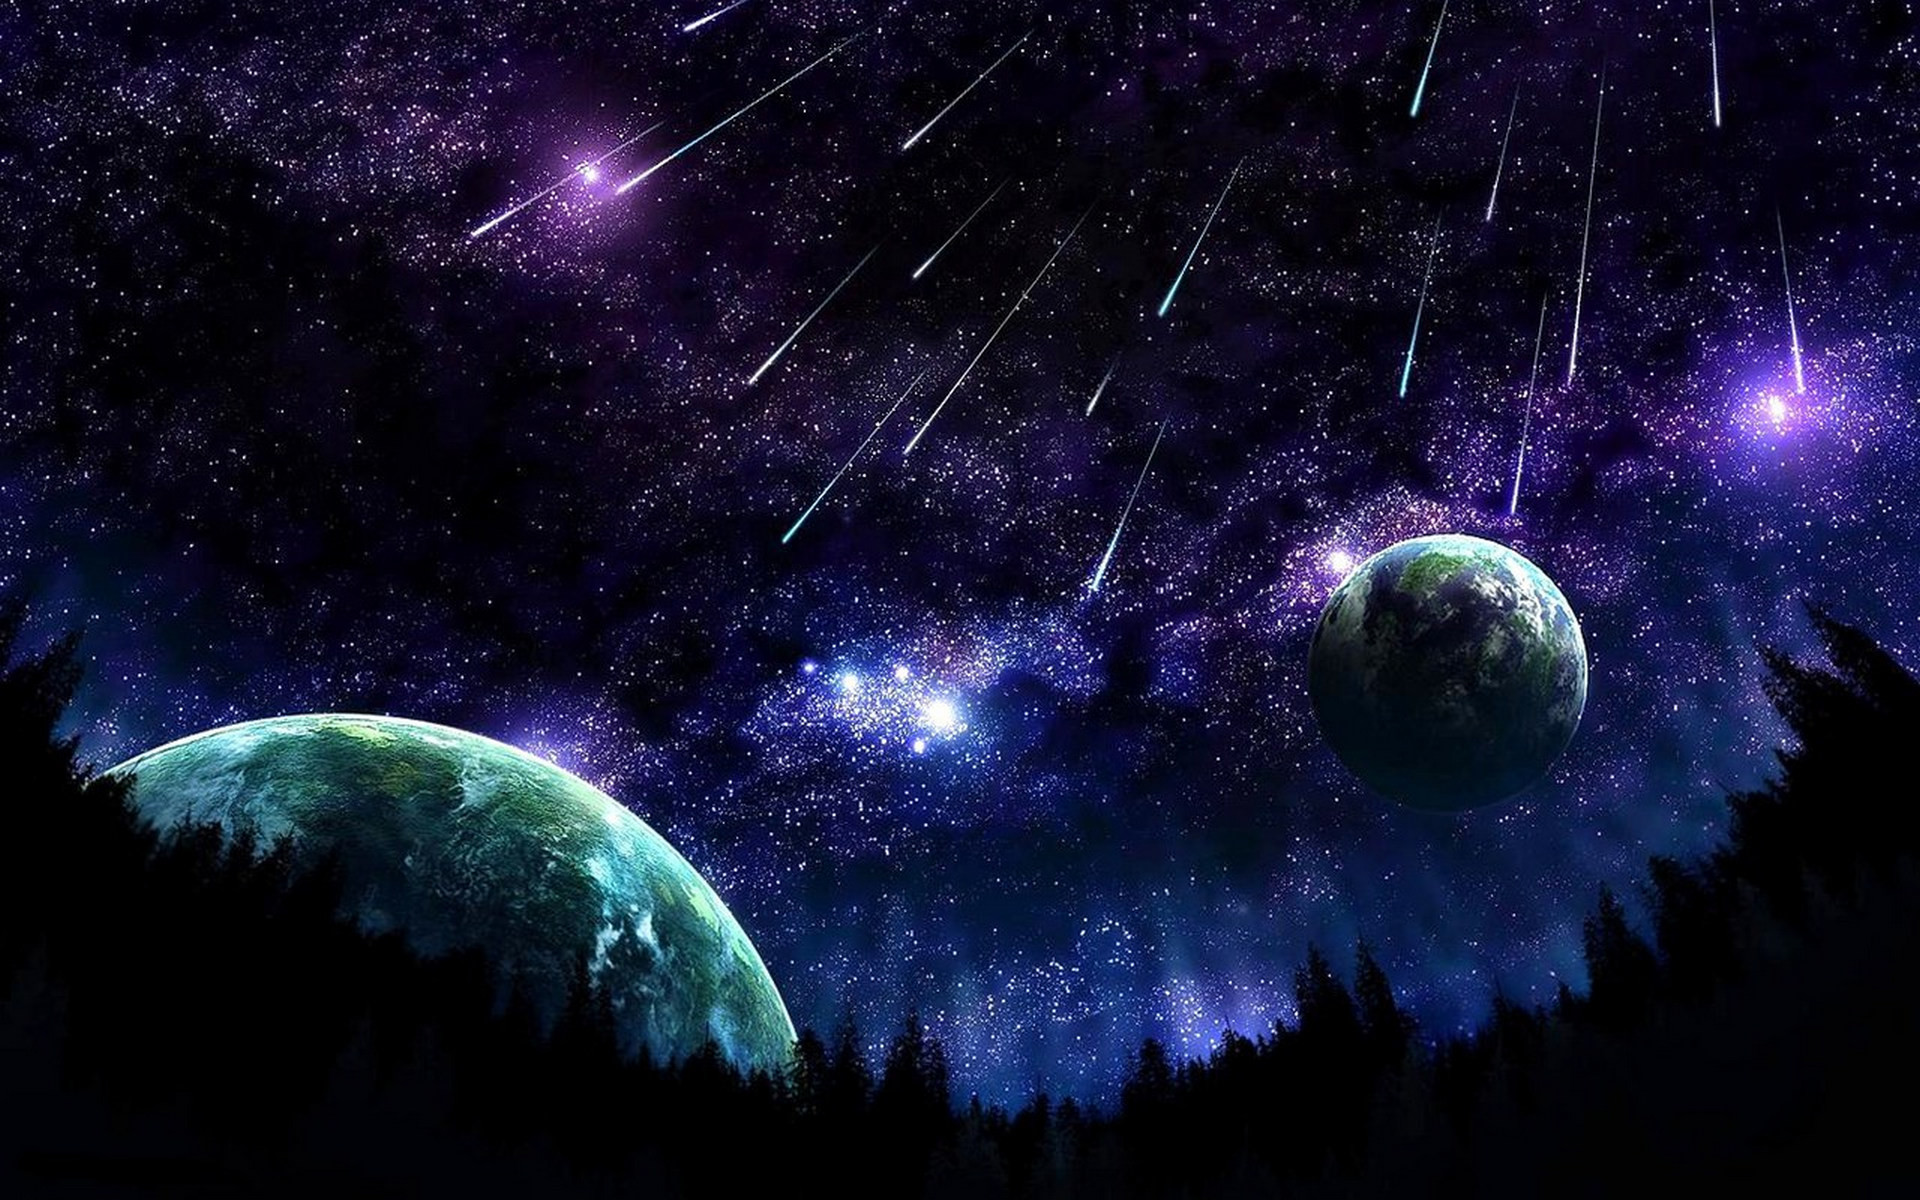 Đêm sao băng là những khoảnh khắc kỳ diệu và lãng mạn trong đêm. Hãy cùng chiêm ngưỡng hình ảnh tuyệt đẹp của vô số sao băng rực rỡ trên bầu trời đêm để cảm nhận thêm tình yêu và sự đẹp đẽ của cuộc sống.